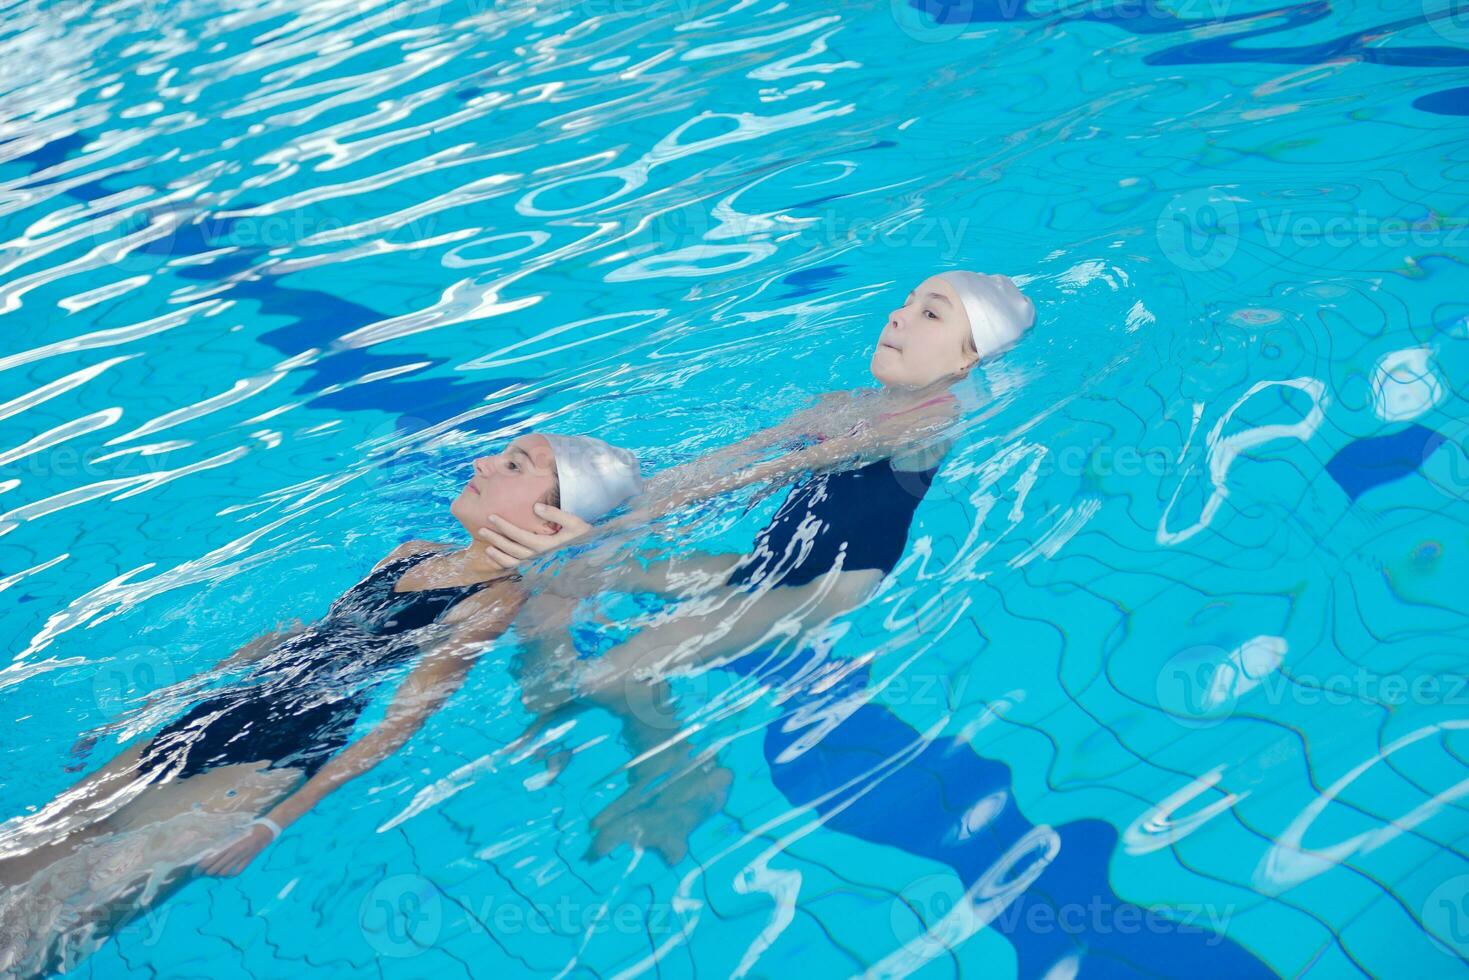 helpen en redden Aan zwemmen zwembad foto